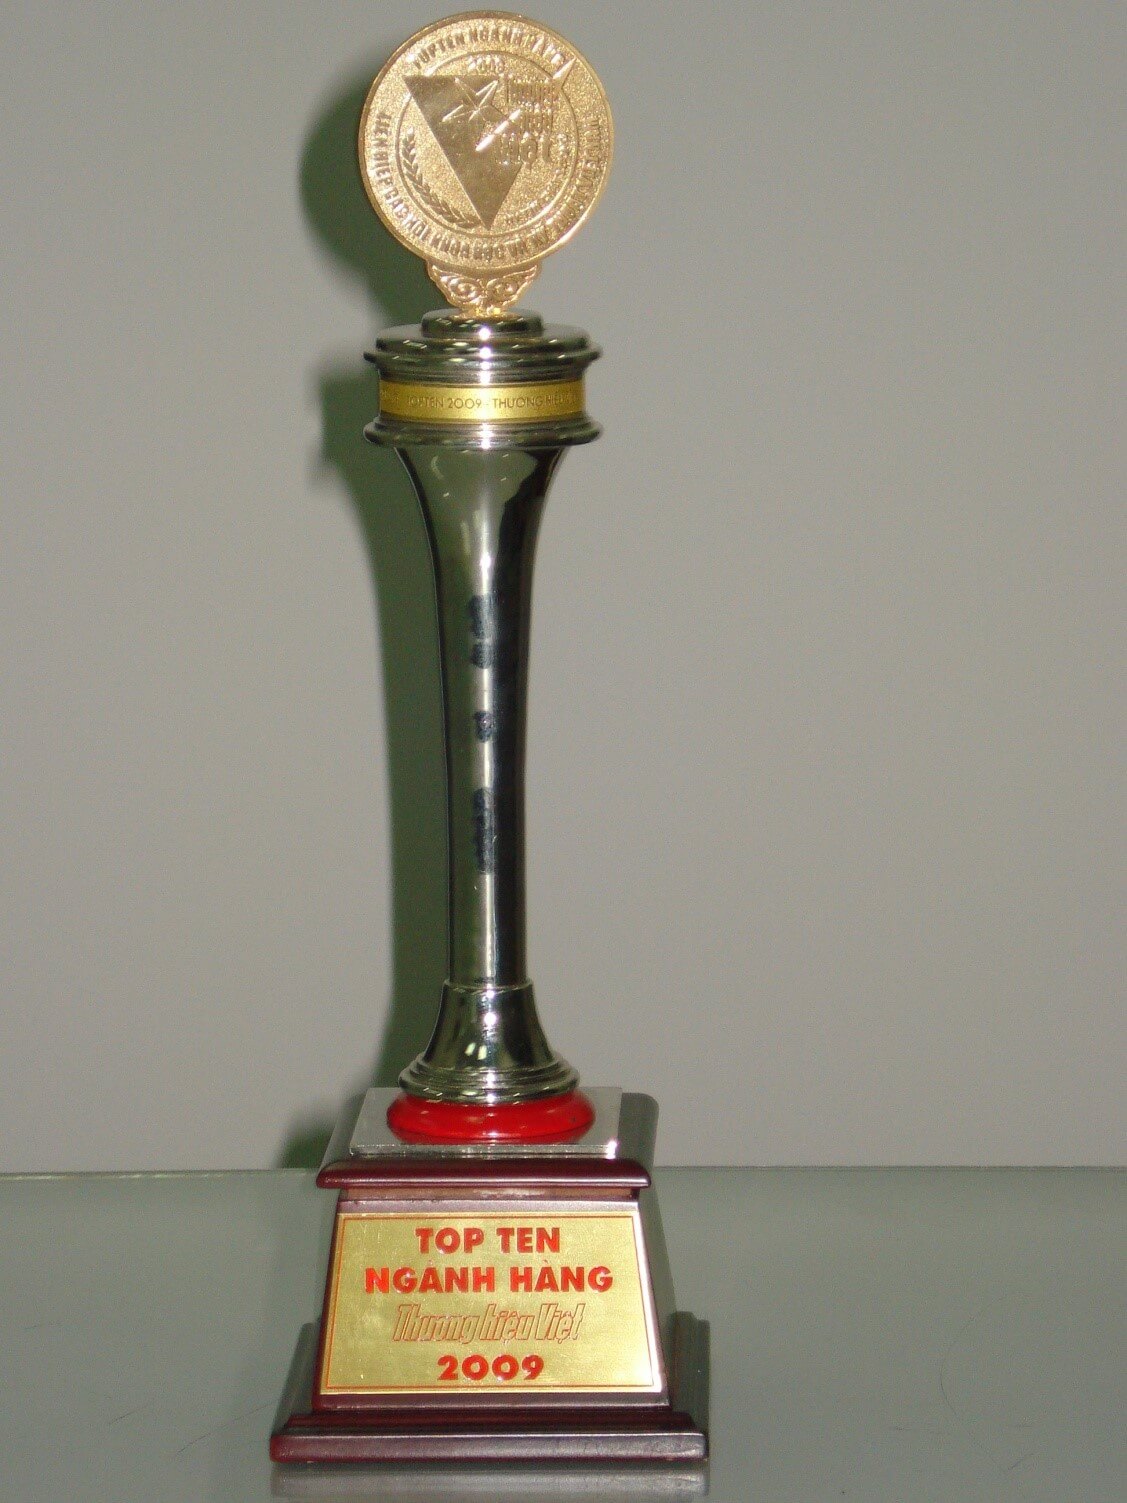 Đạt Cup vàng “Top 10 ngành hàng thương hiệu Việt năm 2009”